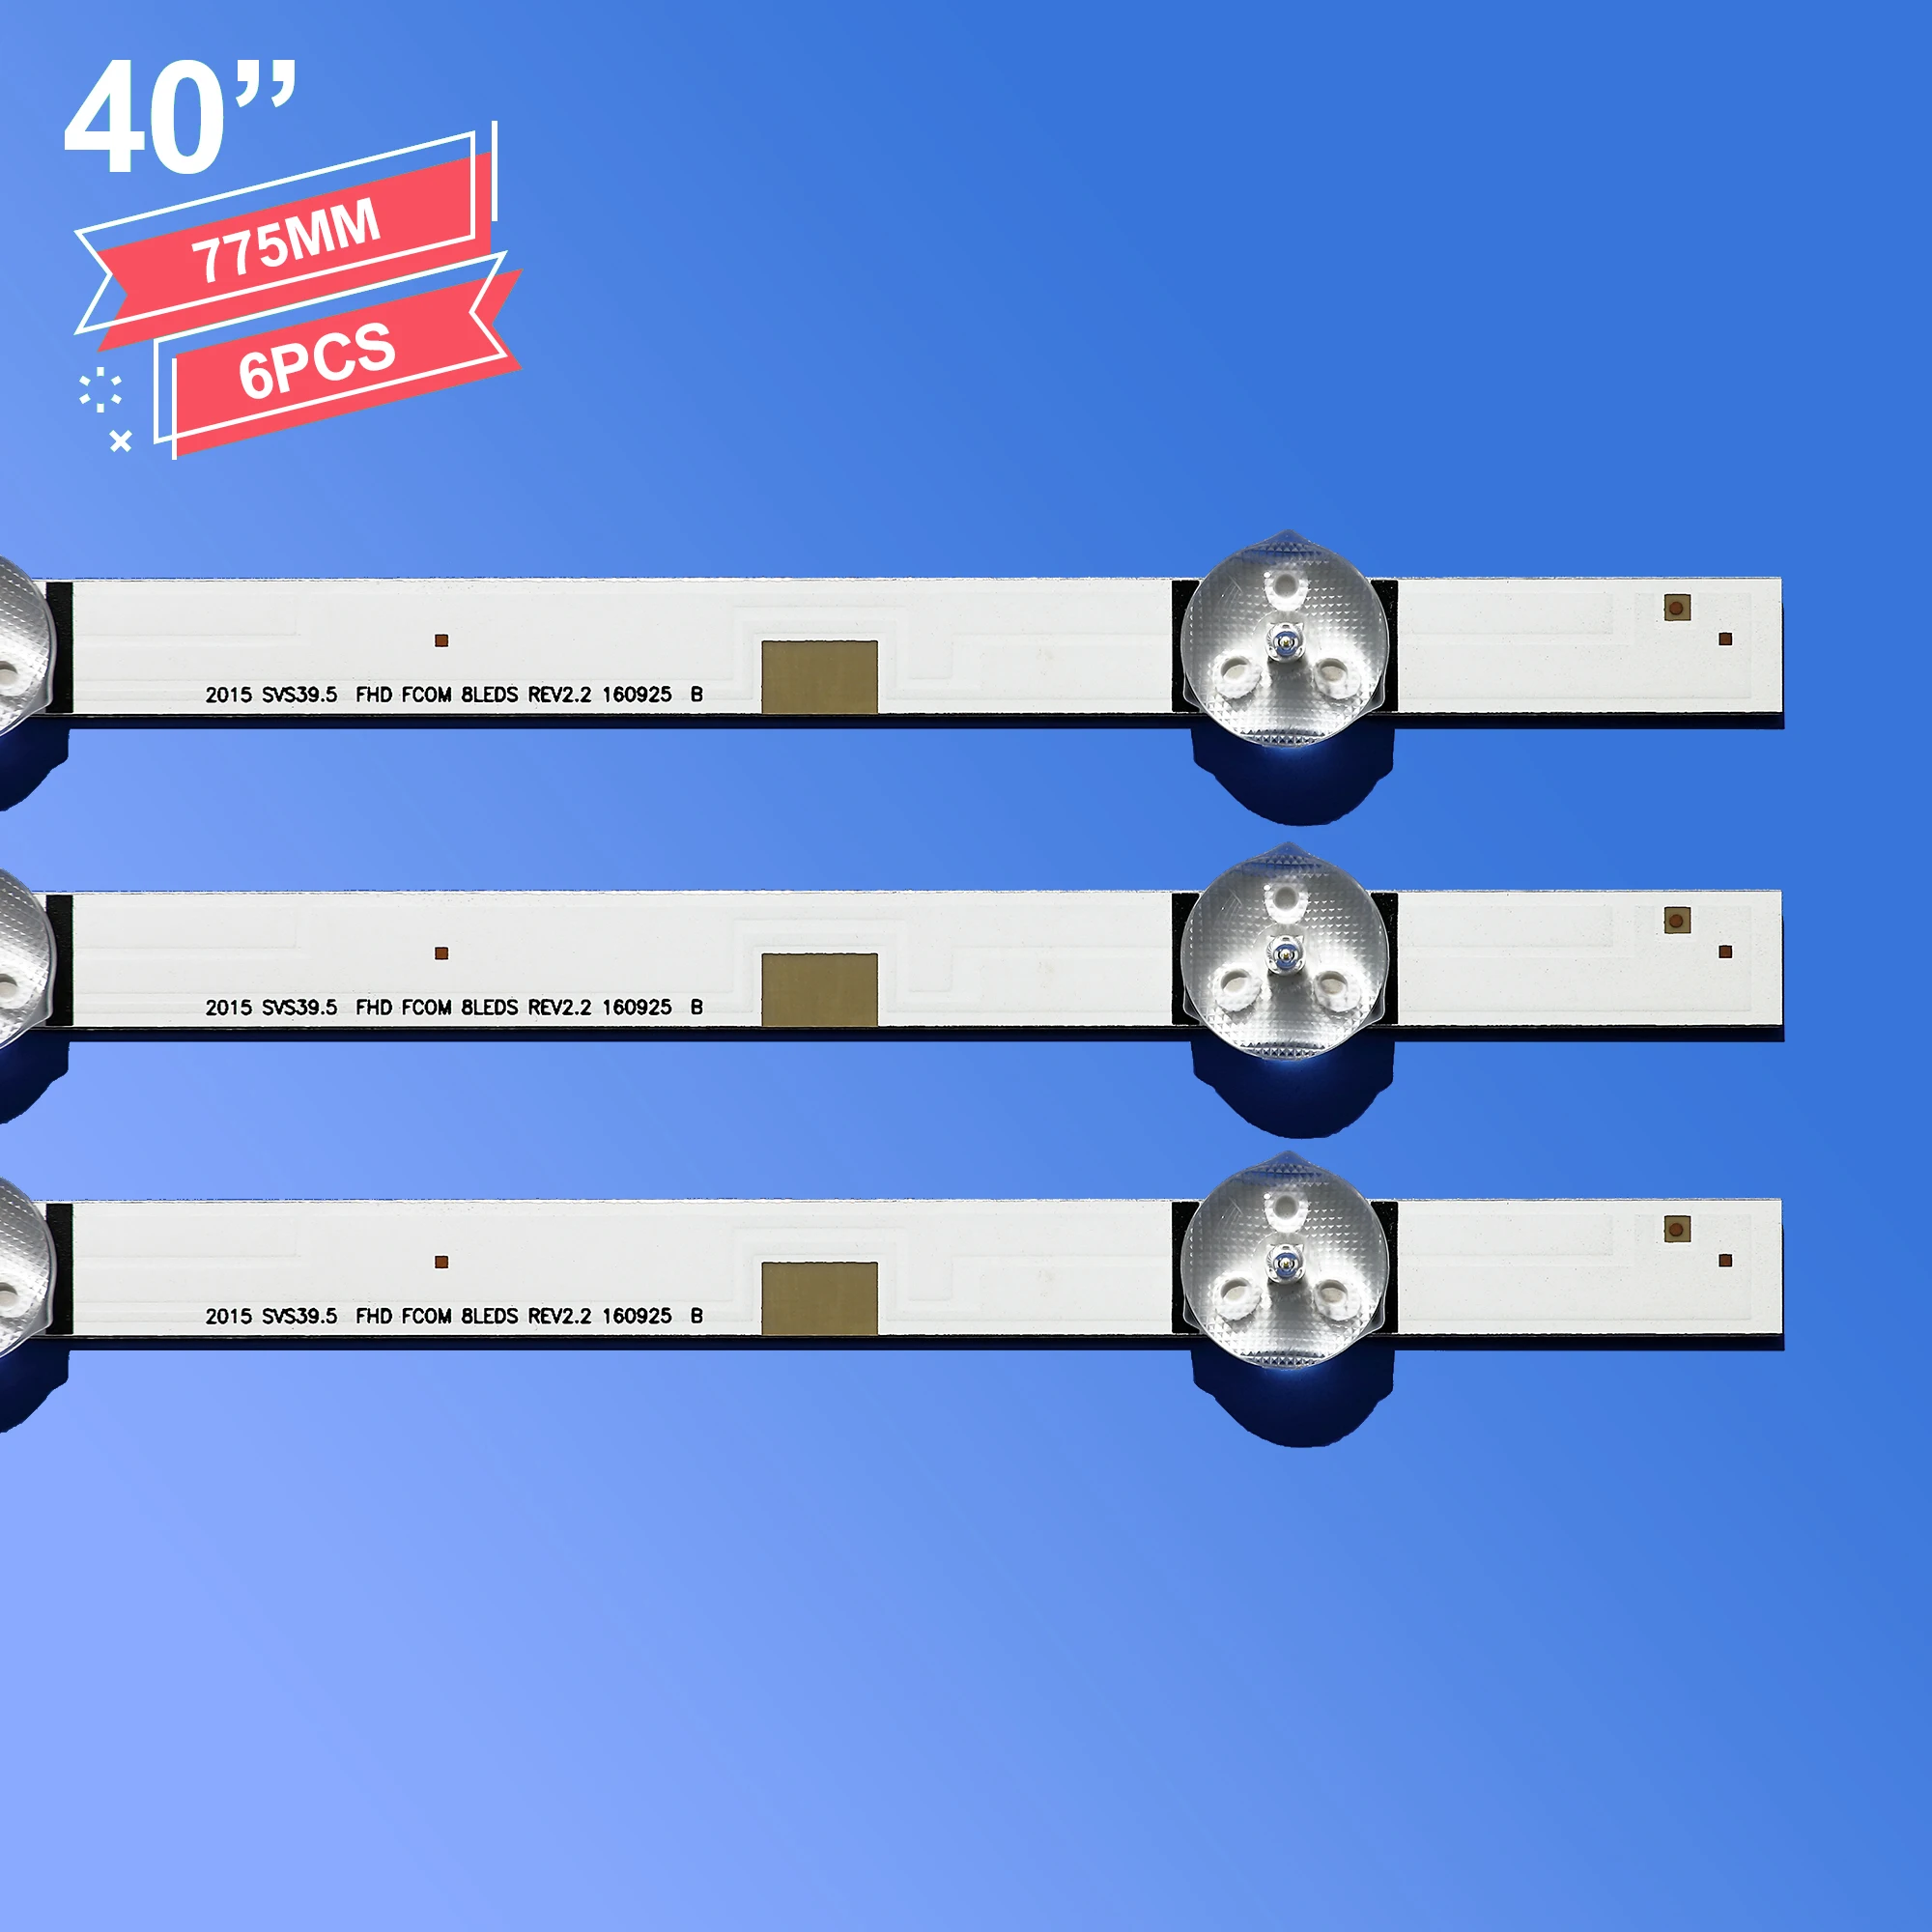 LED Backlight Strip For Samsung 40'' TV UE40J5200AW UE40J5200 V5DN-395SM0-R2 R3 BN96-37622A LM41-00144A 00121X 2015 SVS39.5 FCOM